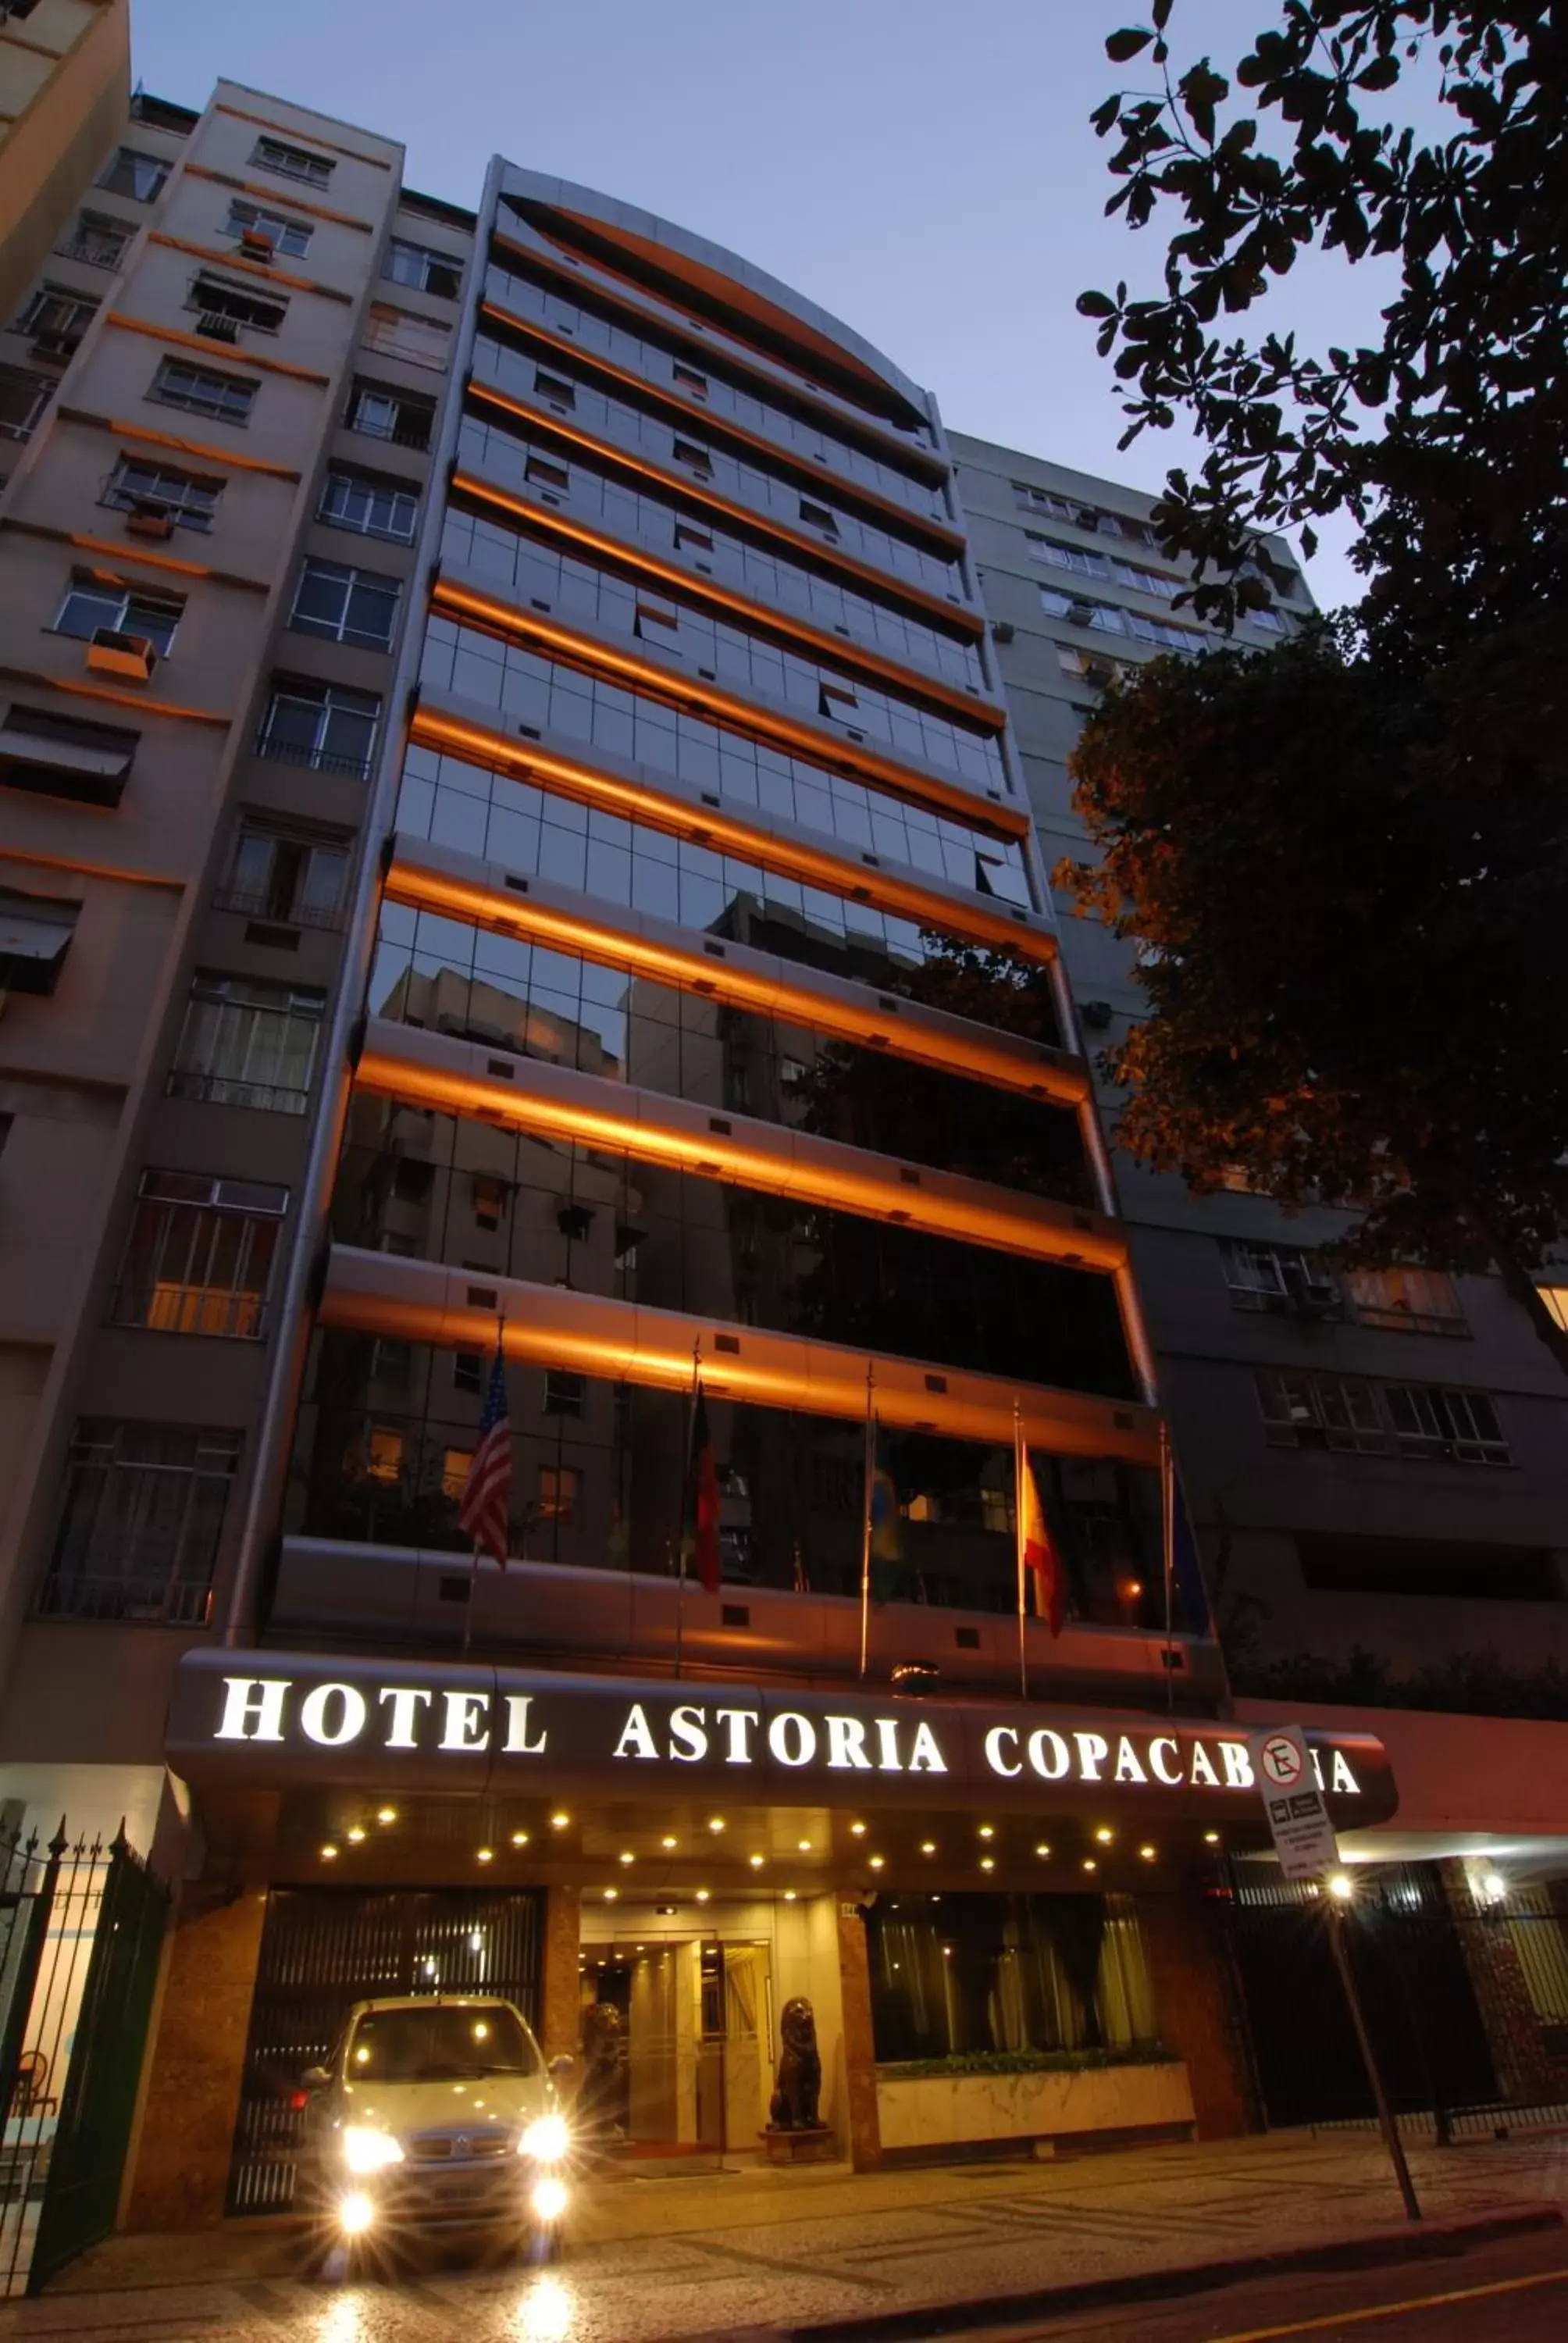 Facade/entrance in Hotel Astoria Copacabana